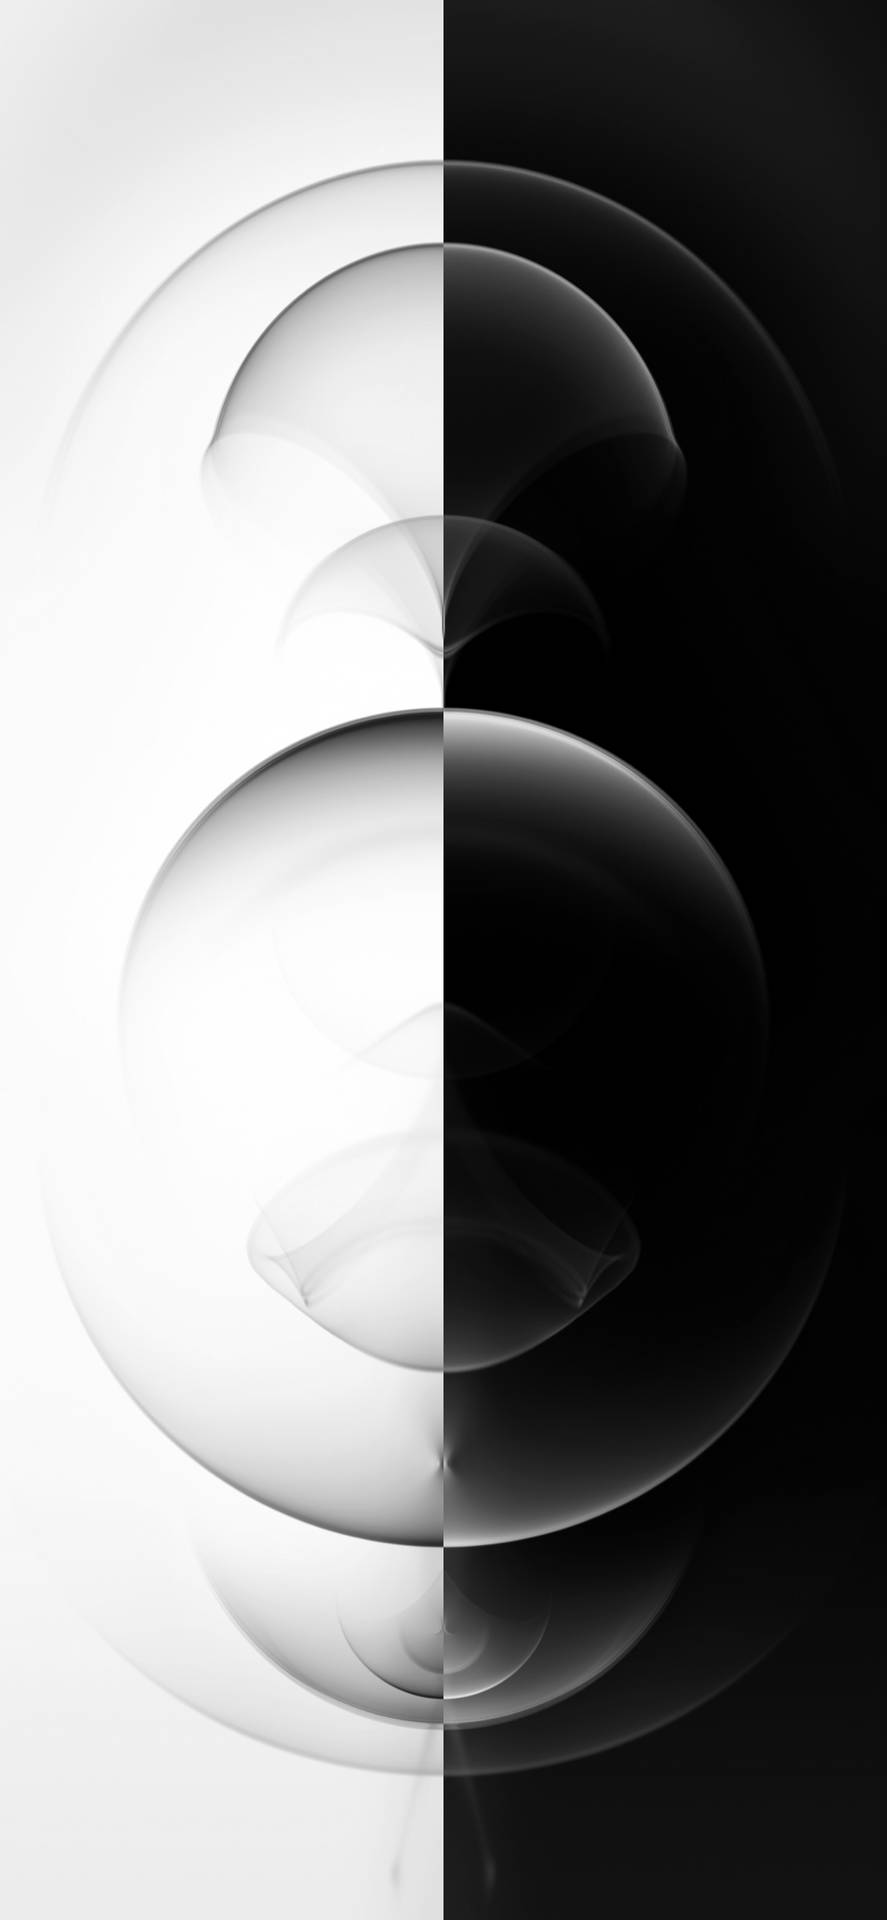 Schwarzeund Weiße Muster Iphone 2021 Wallpaper